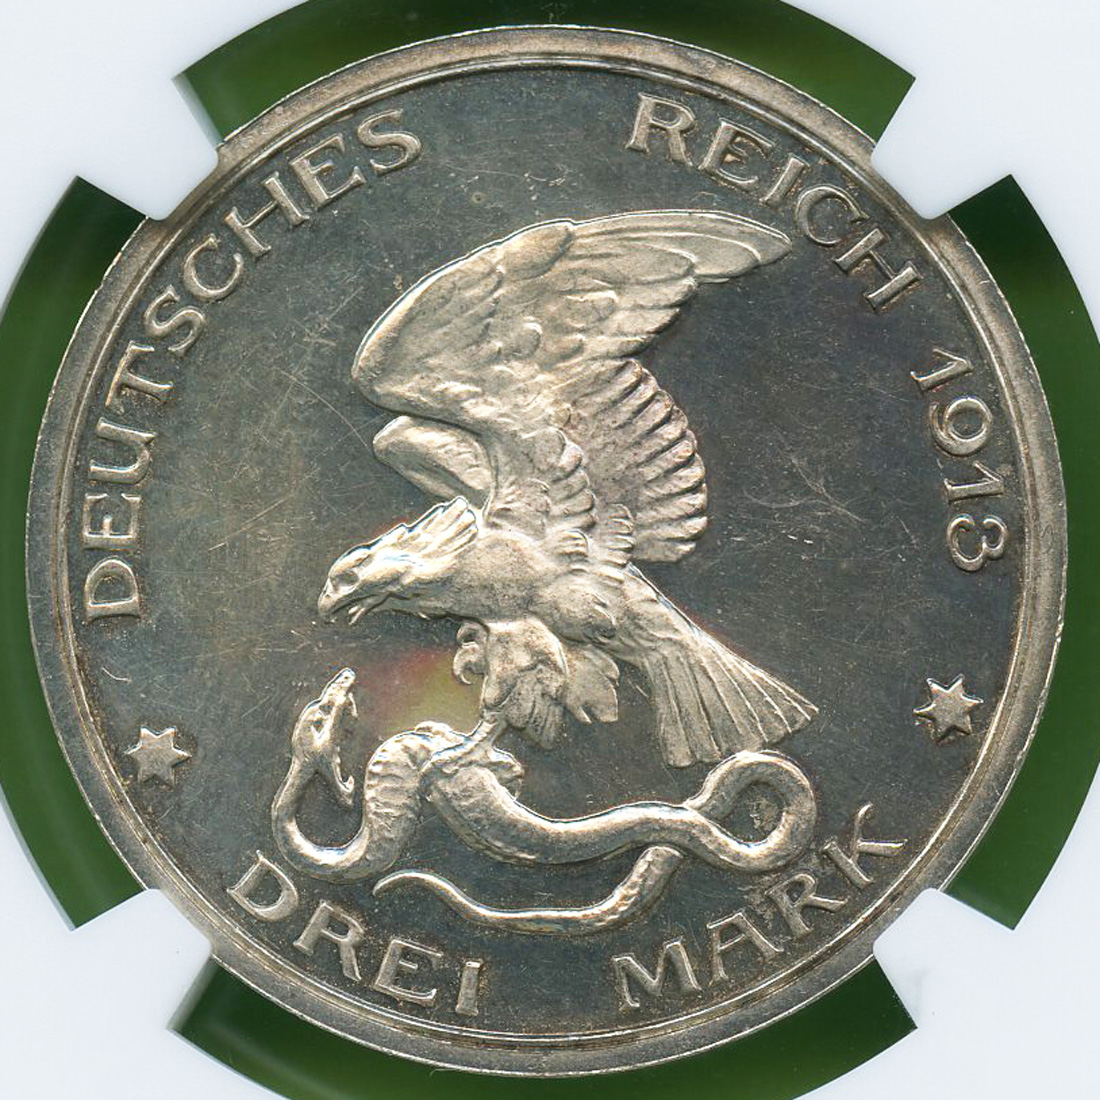 ナポレオン戦争100周年記念銀貨】1913年 プロイセン 2マルク PCGS MS64 